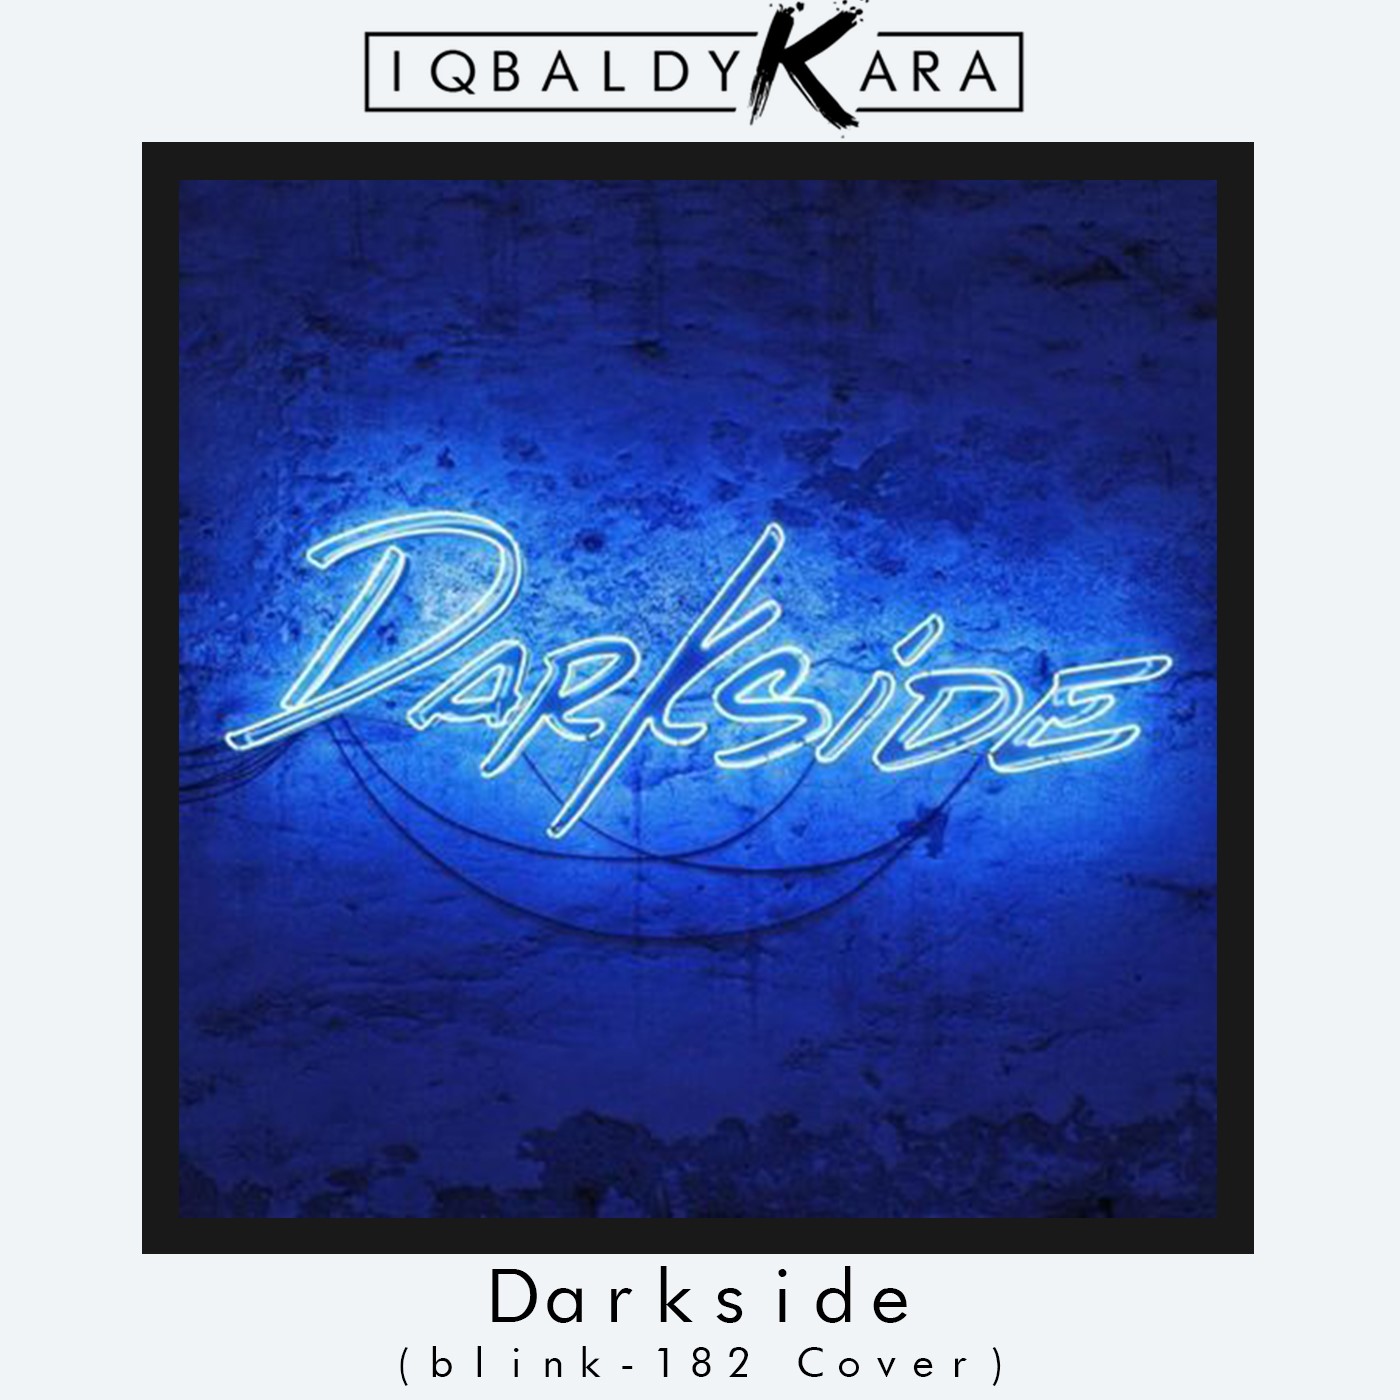 Tikiake Darkside (blink-182 Cover)